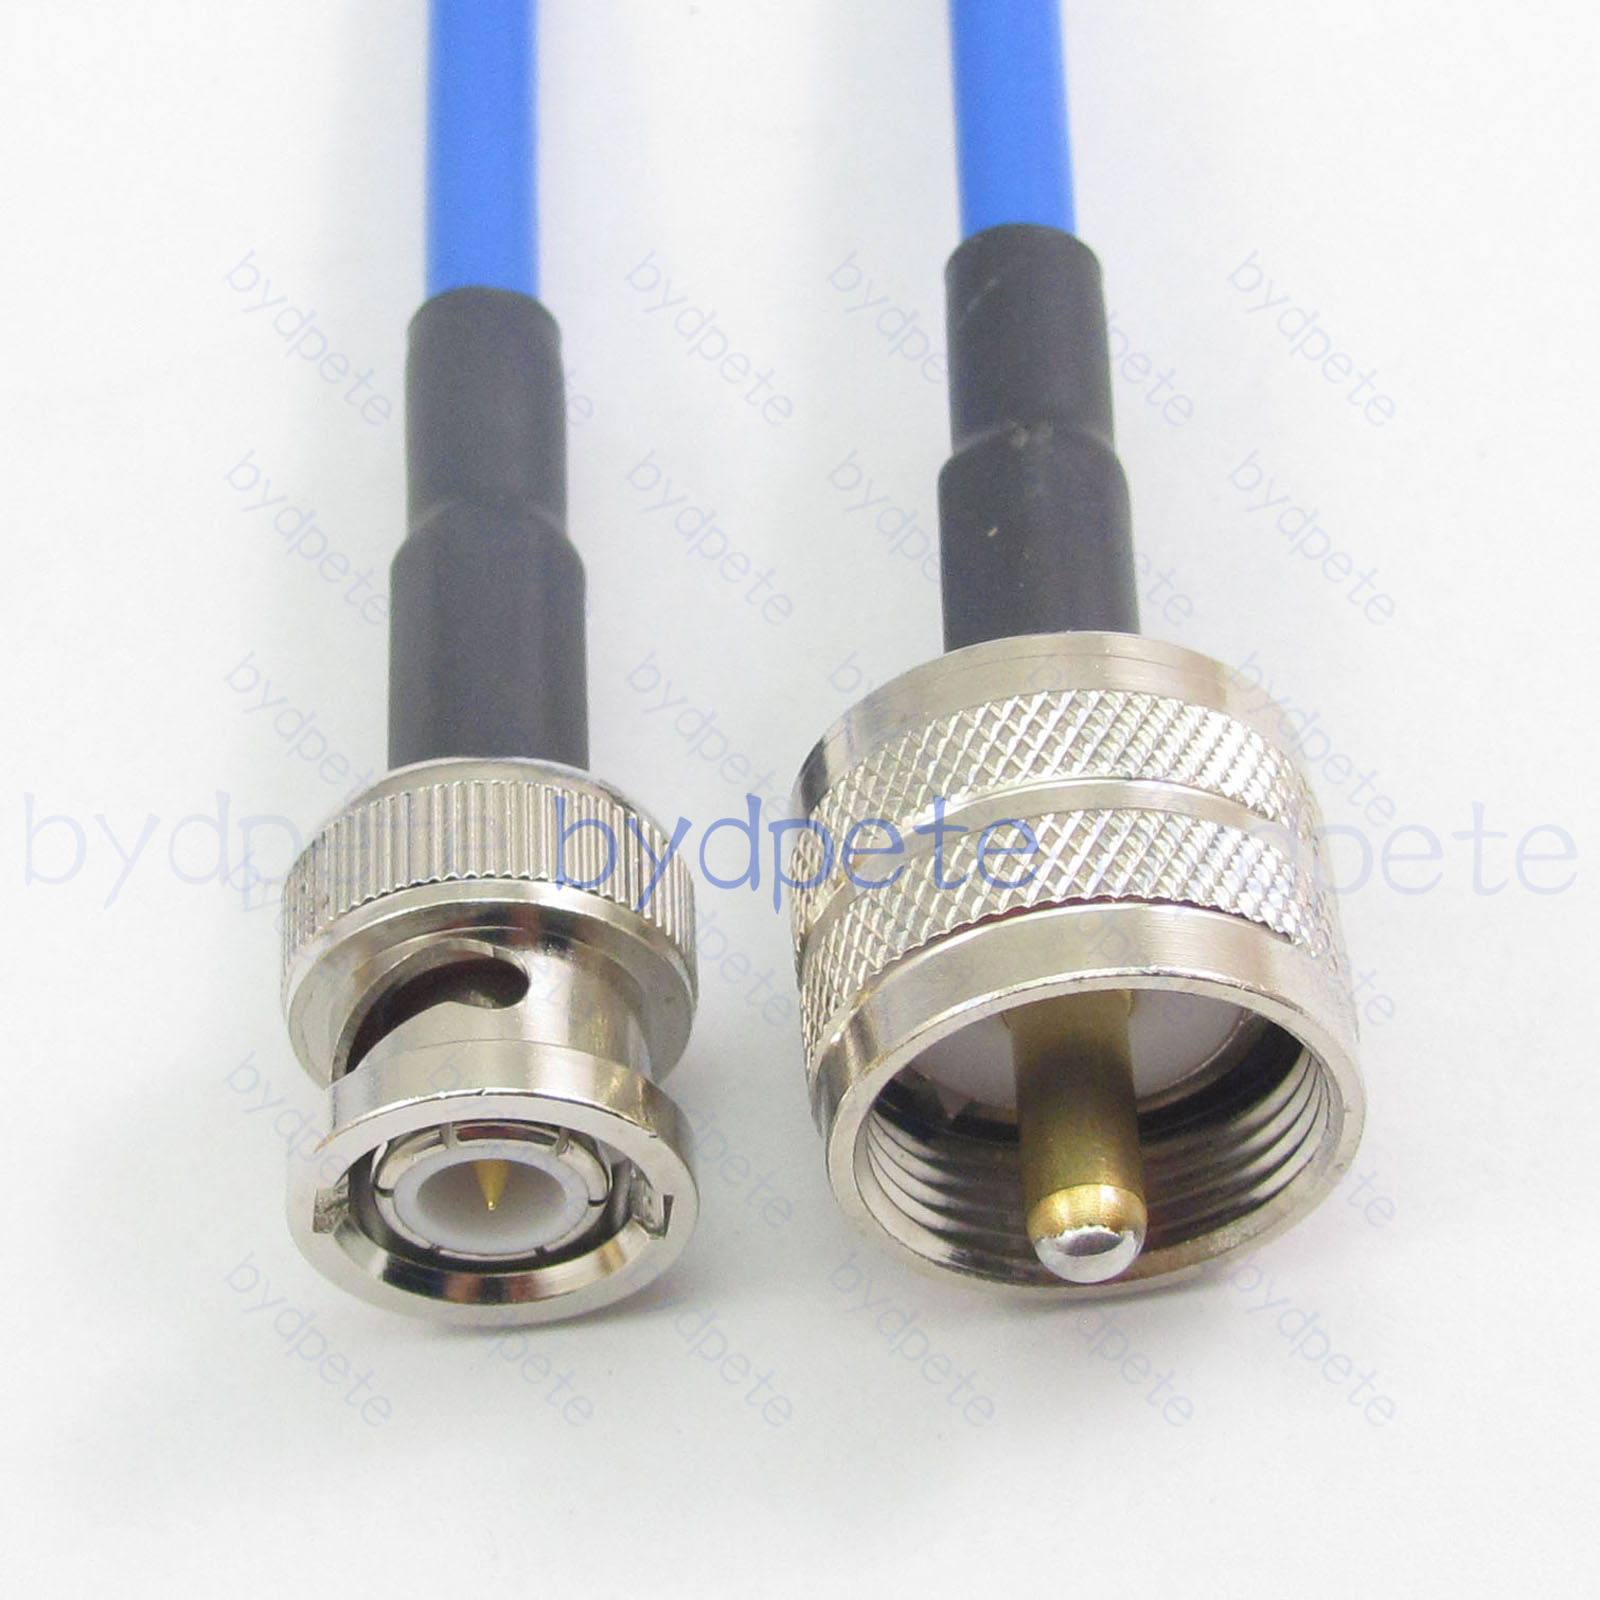 BNC male plug to PL259 UHF male plug RG402 RG141 Semi Flexible Rigid Low Loss Cable Coaxial Kable 50ohm BYDC072BNC402 BNC-RG402